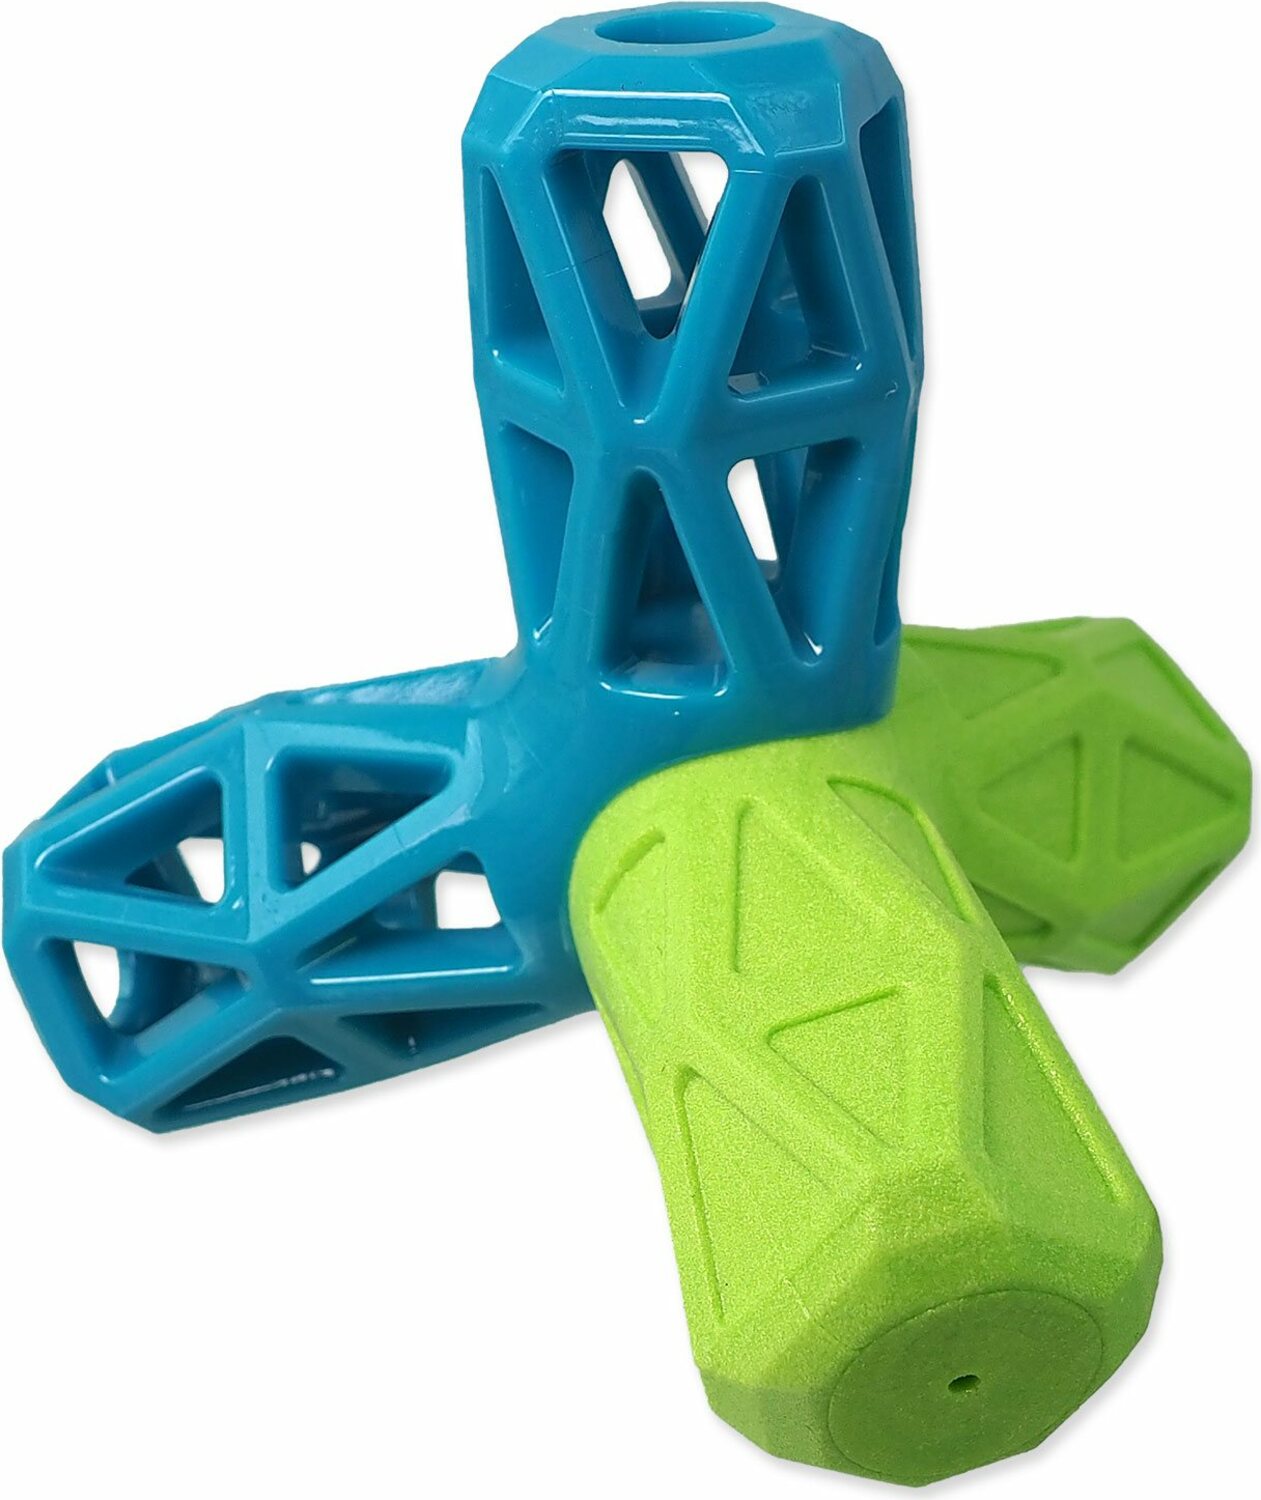 Hračka Dog Fantasy geometrická pískací modro-zelená 12,9x1,2x10,2cm